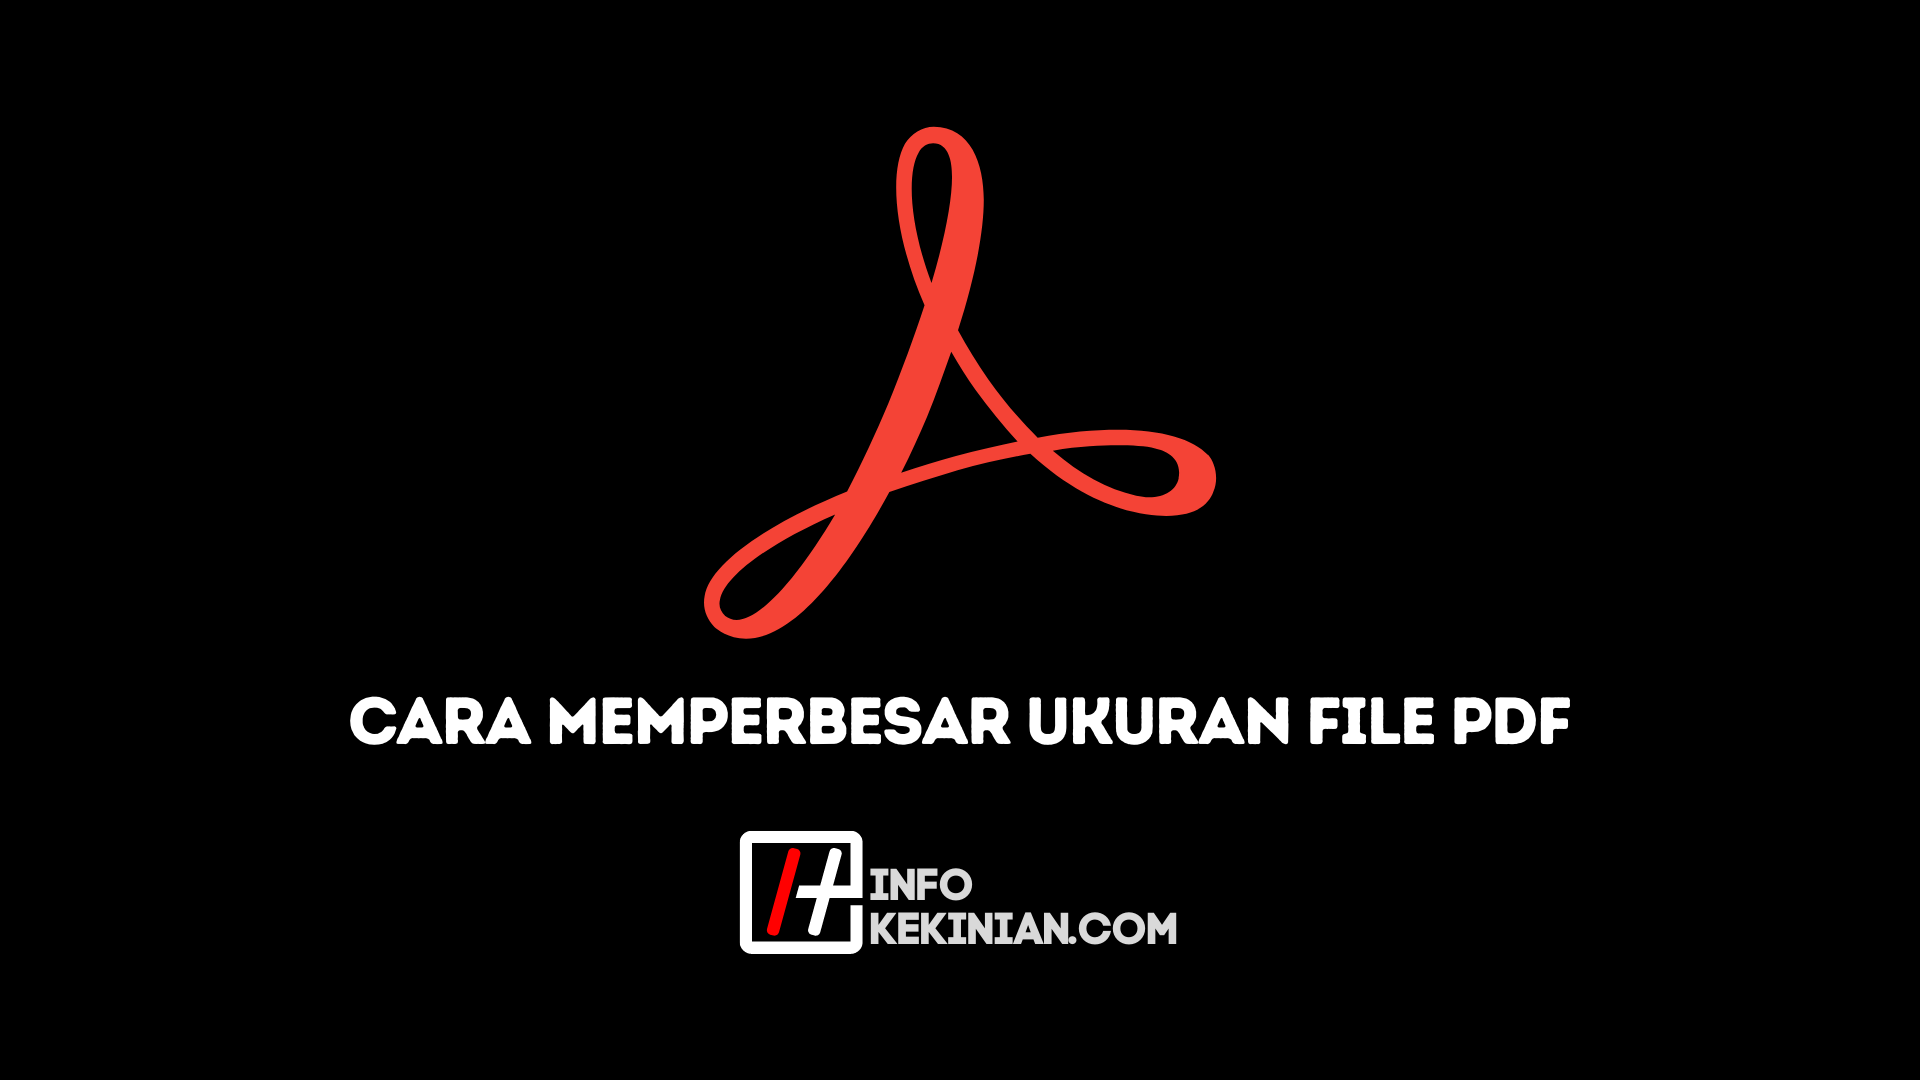 Cara memperbesar file PDF